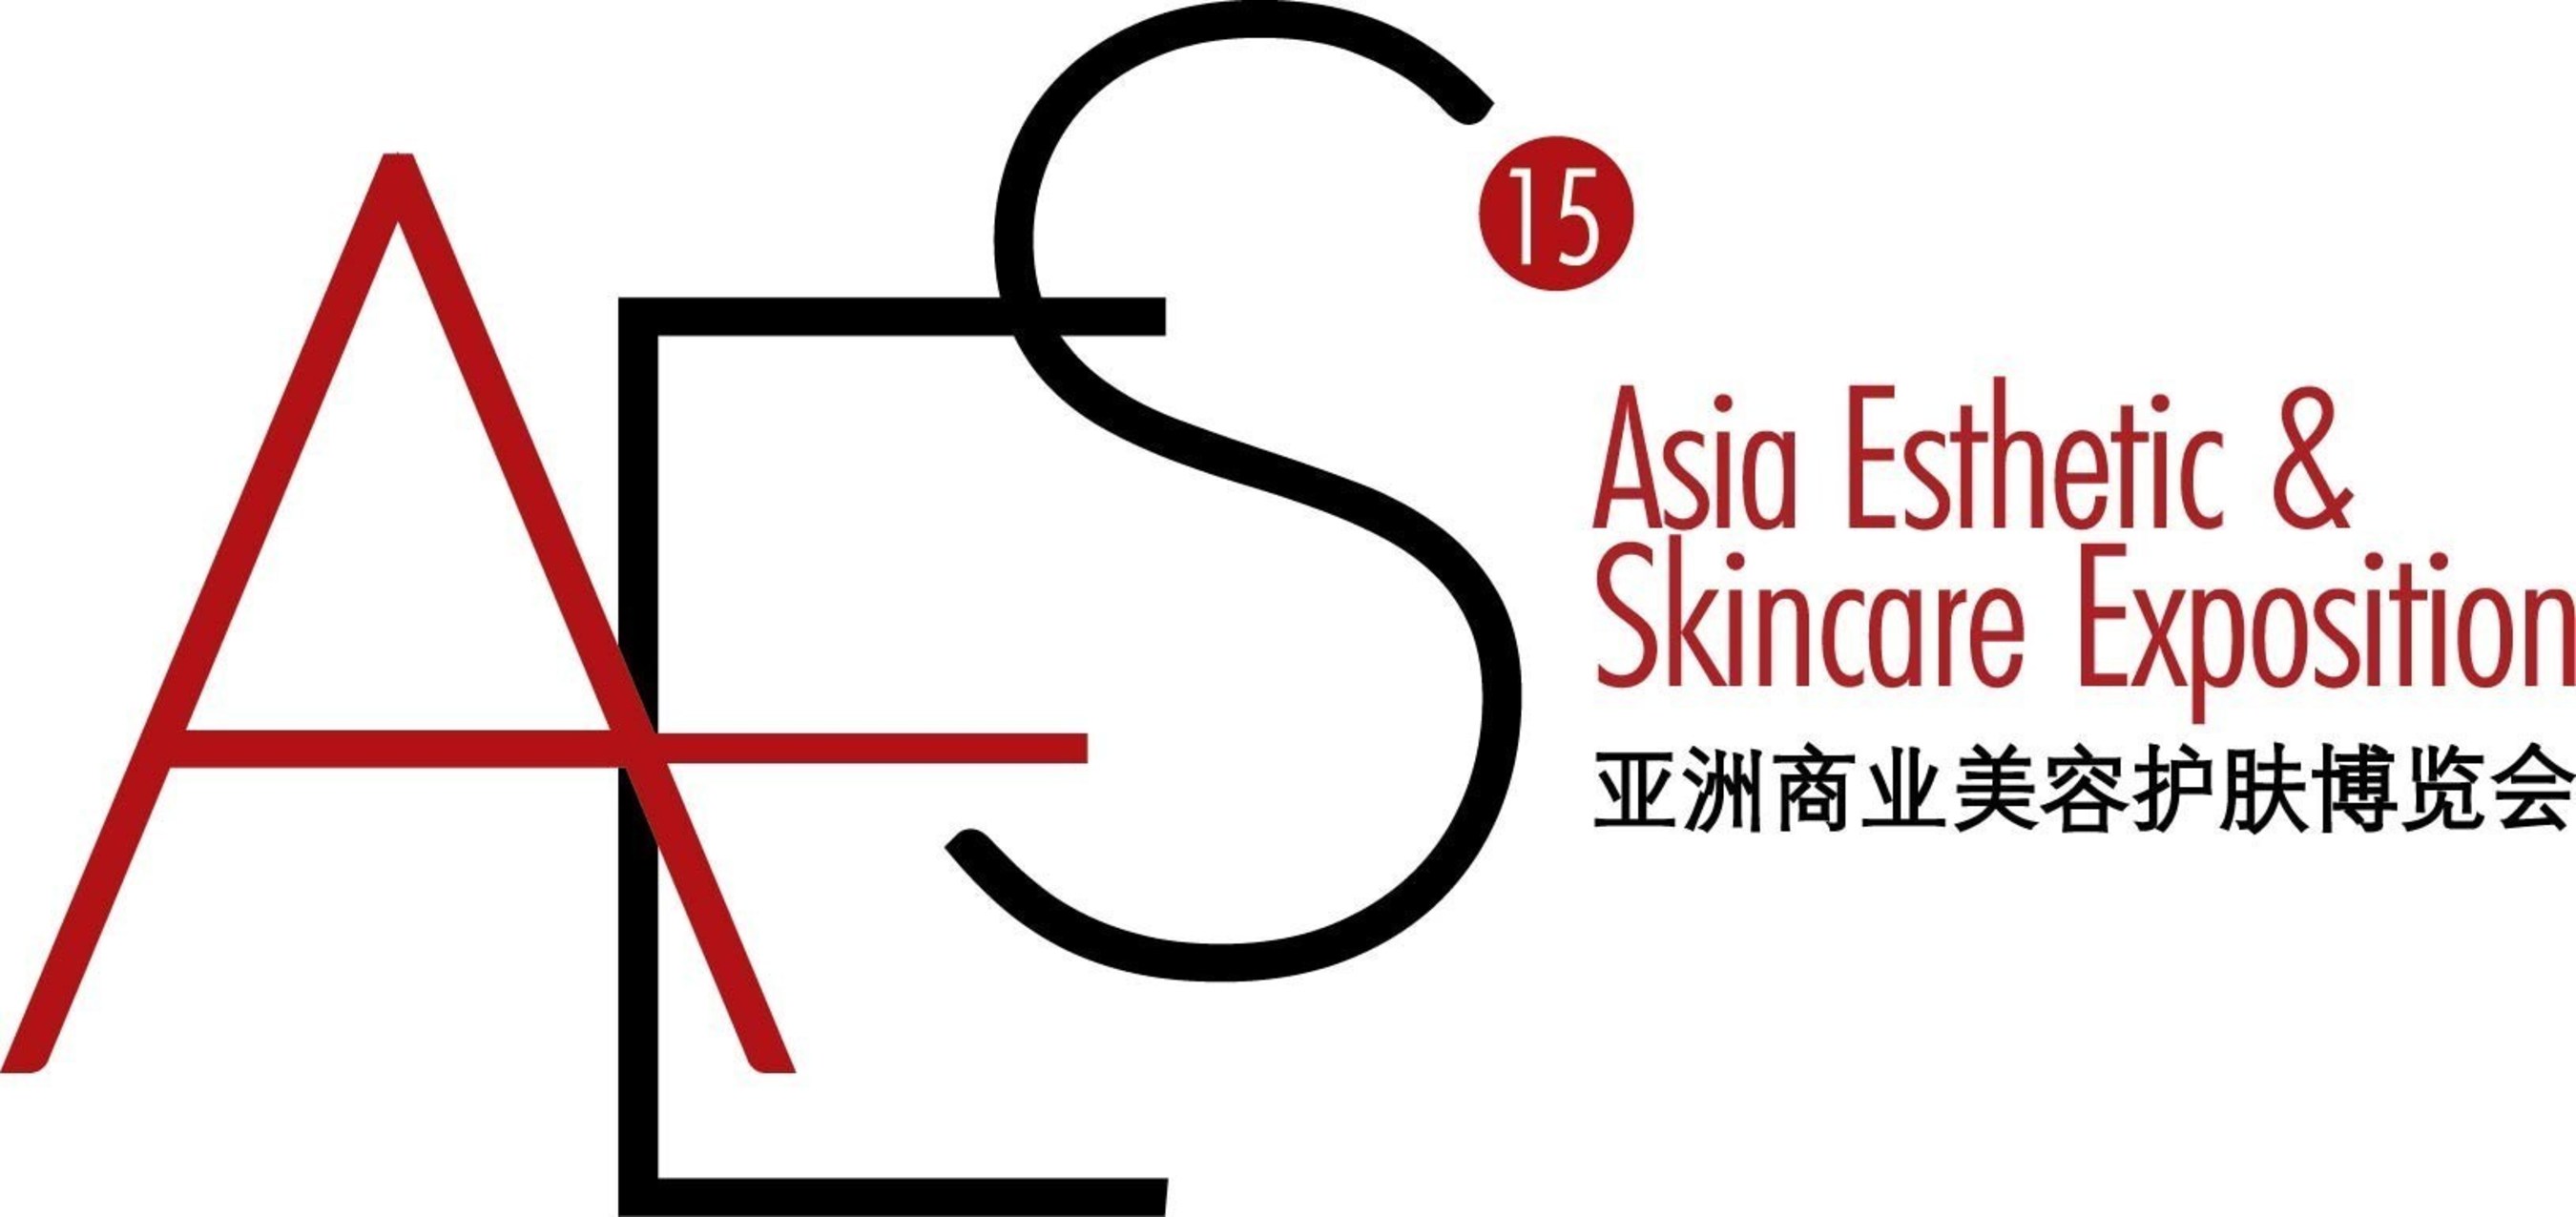 AES Expo15 logo